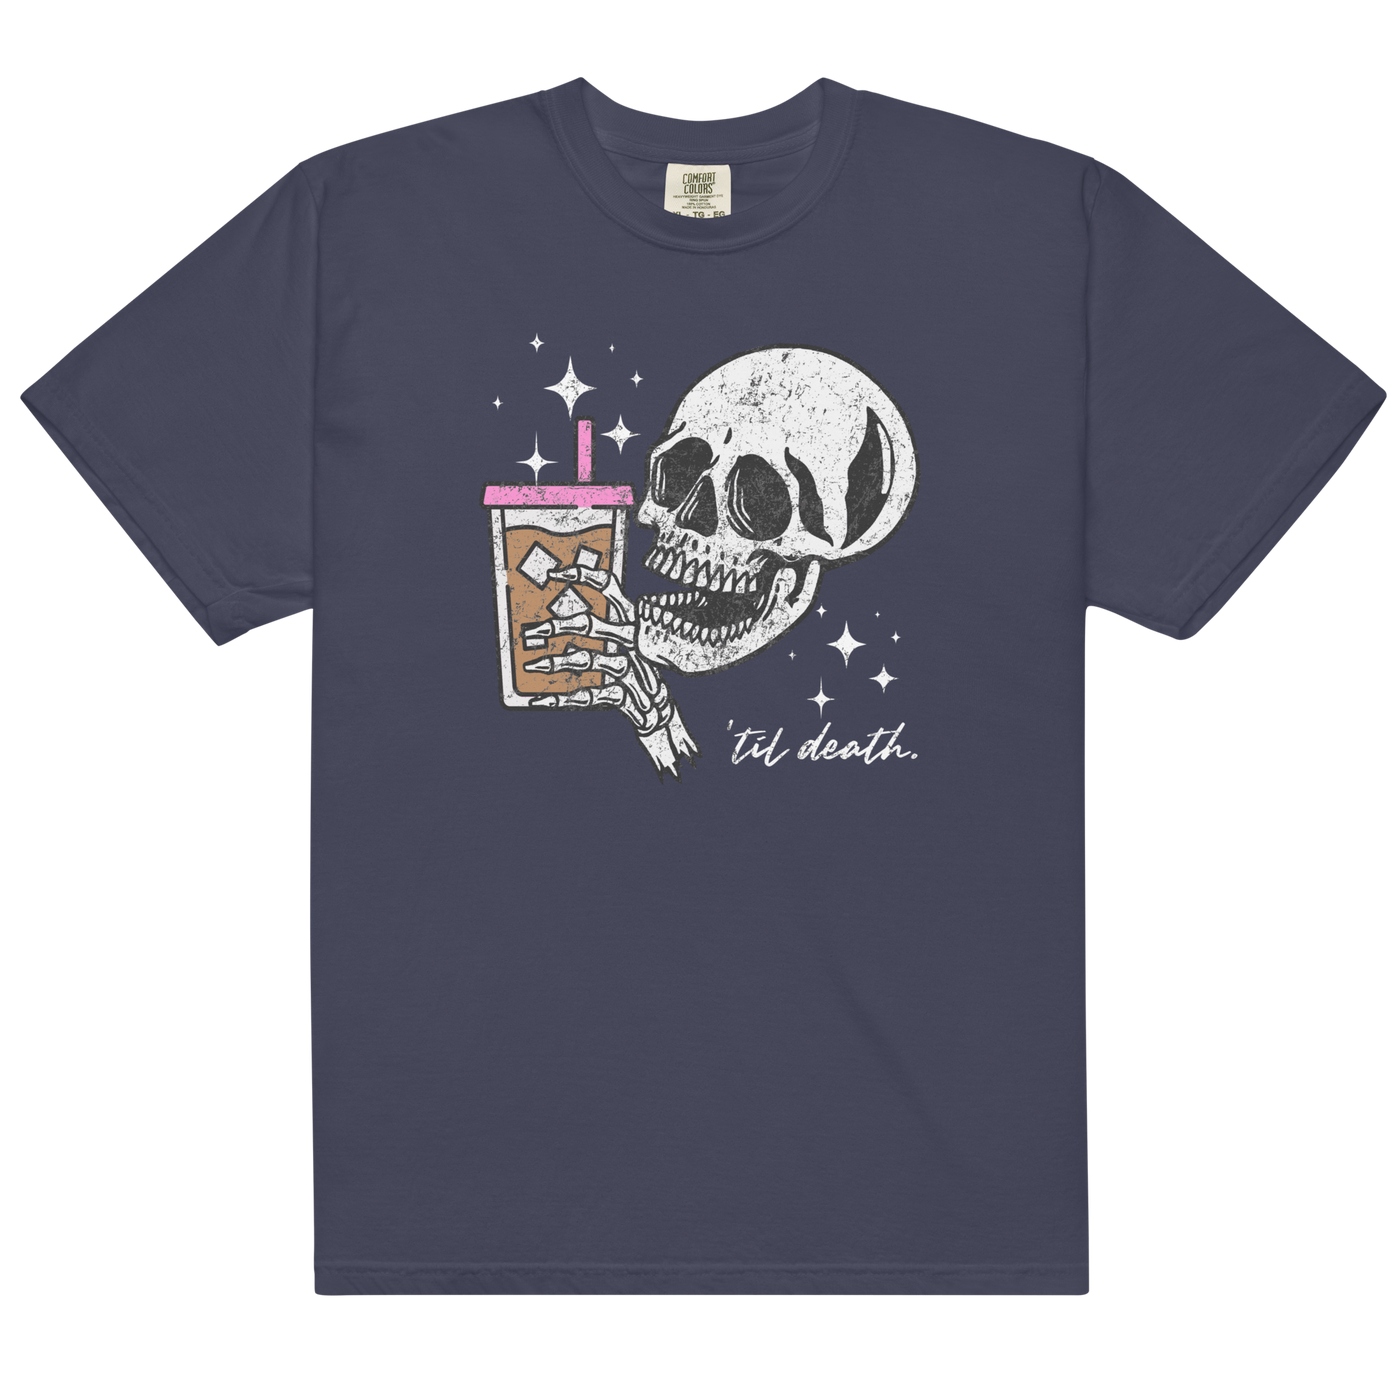 'Til Death Iced Coffee' T-Shirt